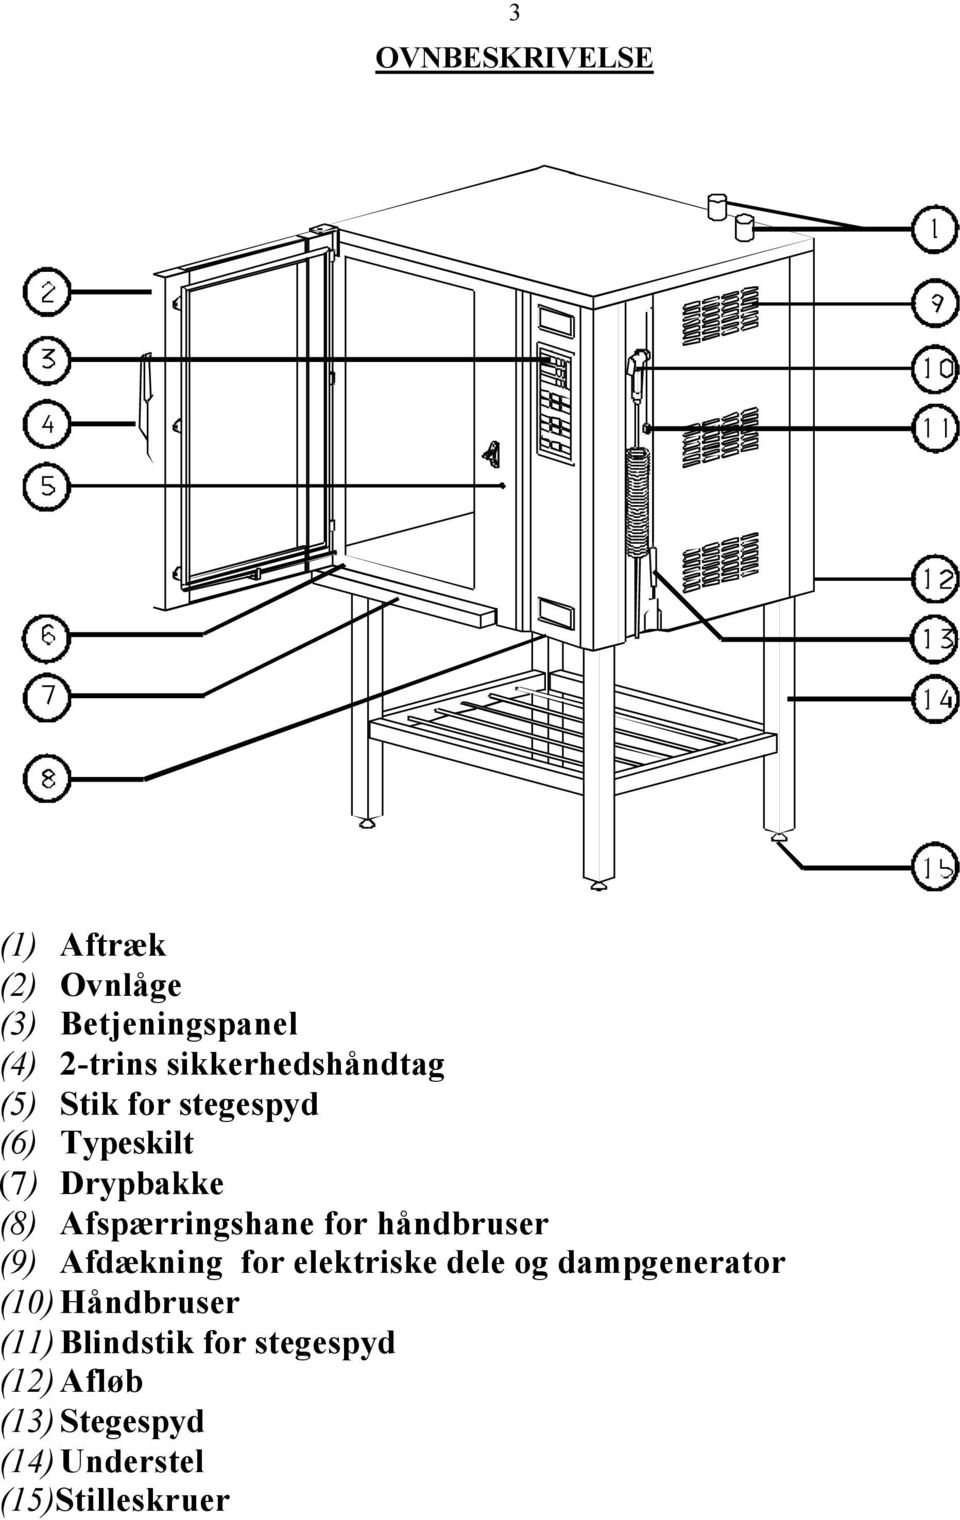 Afspærringshane for håndbruser (9) Afdækning for elektriske dele og dampgenerator